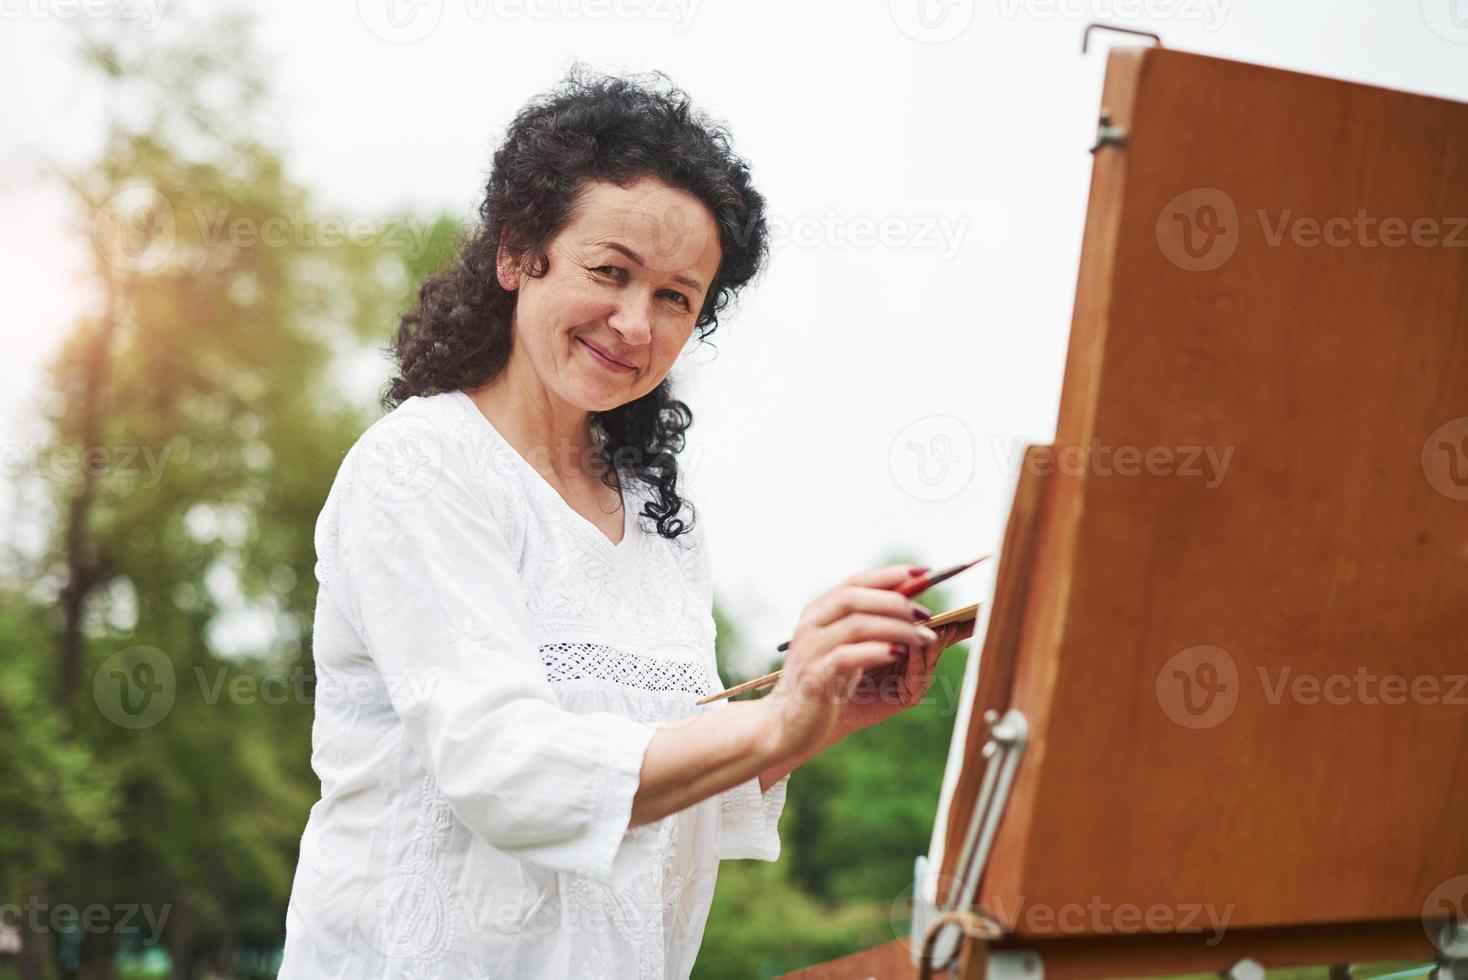 goede atmosfeer. portret van volwassen schilder met zwart krullend haar in het park buiten foto